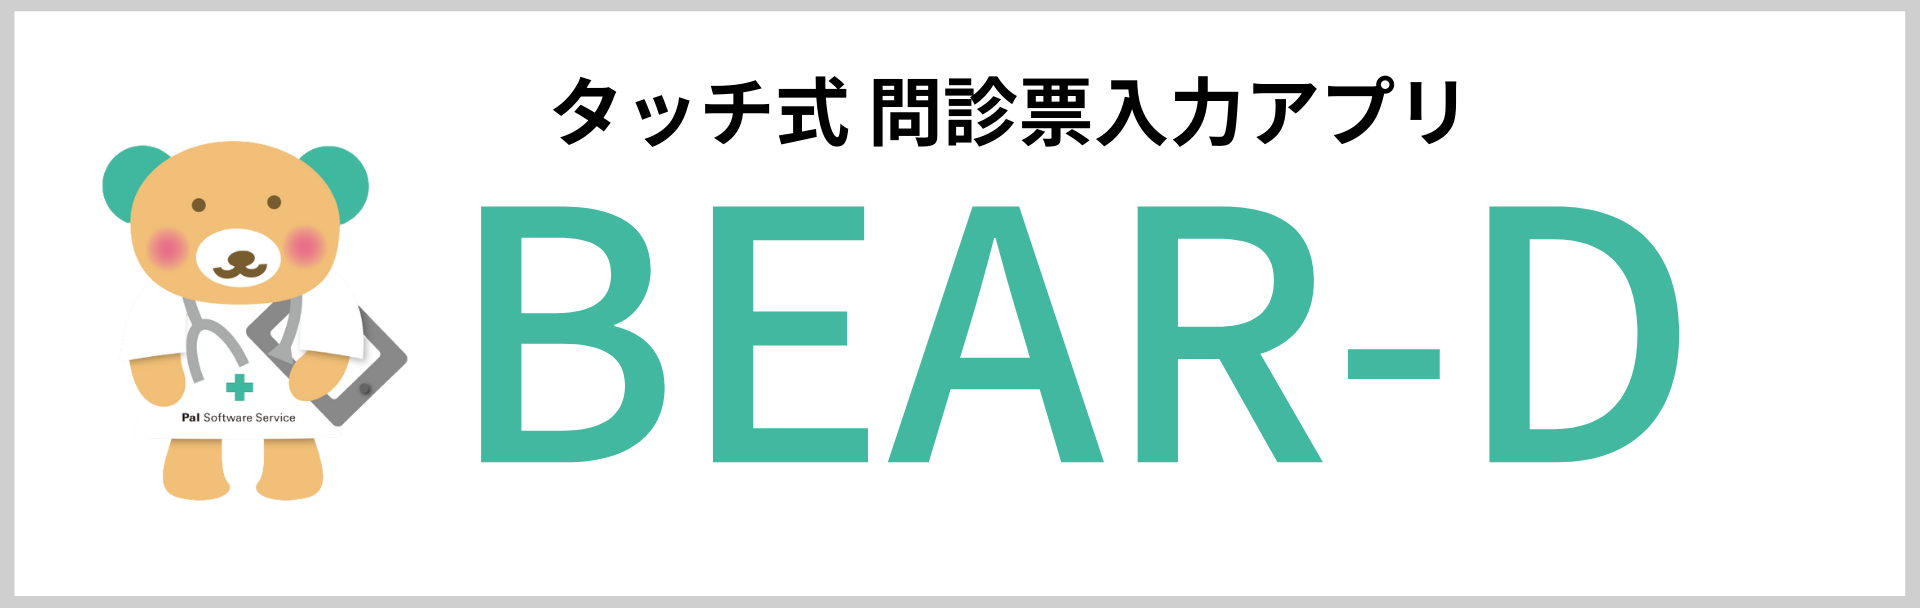 bear-d